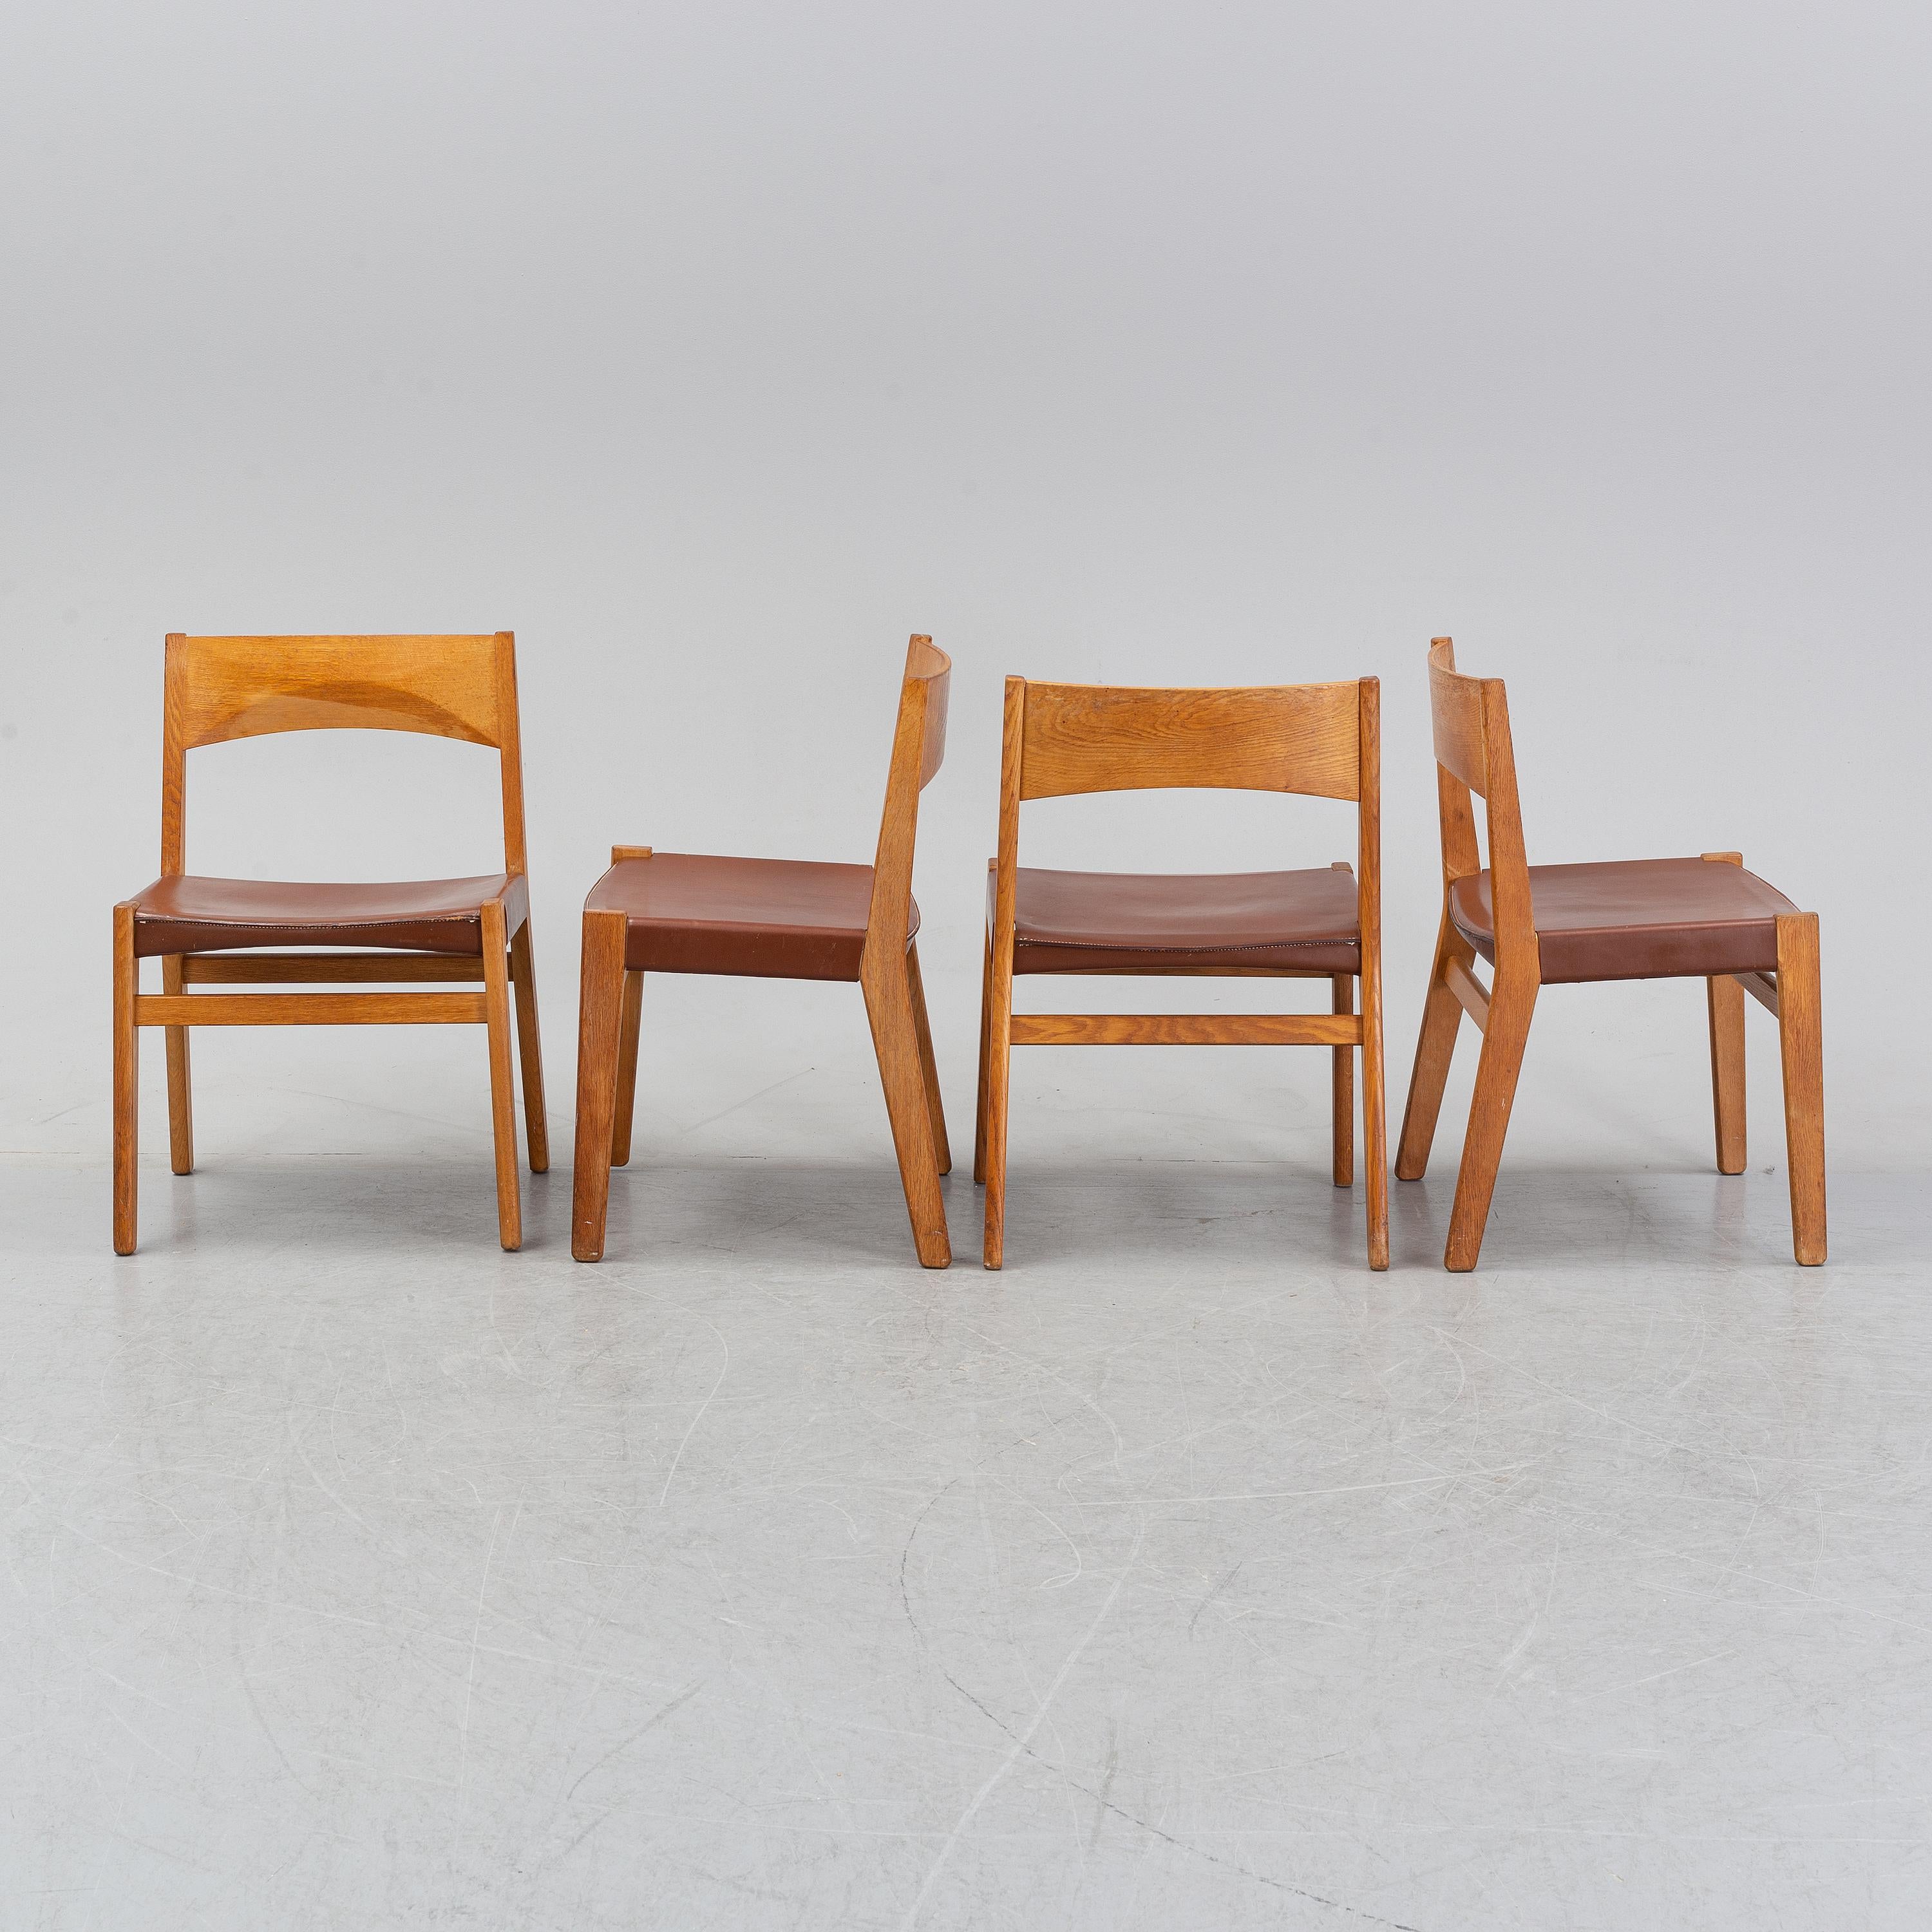 John Vedel-Rieper pour Erhard Rasmussen, ensemble de 4 chaises de salle à manger, chêne, cuir, fait en  Danemark vers 1957.
bon état, usure due à l'âge
Le designer danois John Vedel-Rieper a créé cette chaise de salle à manger en 1957 pour Erhard